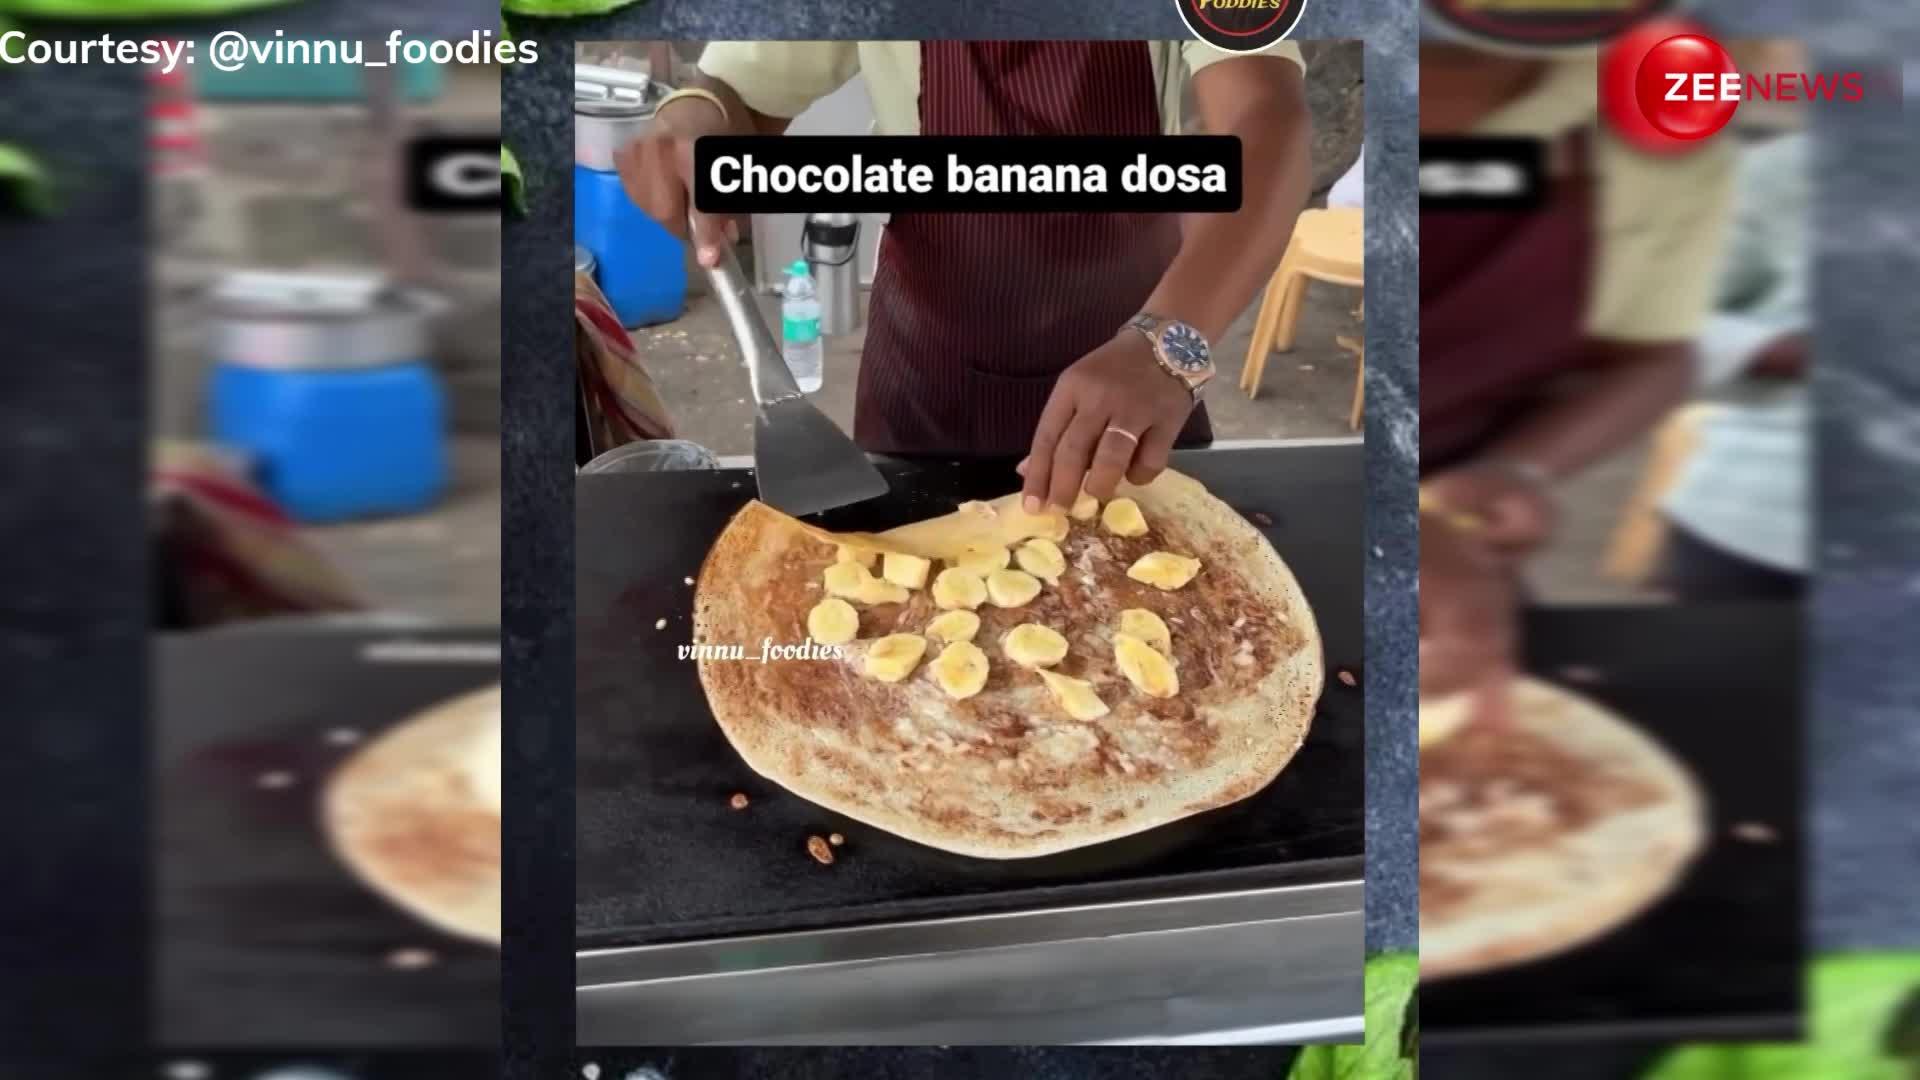 मसाला, पनीर डोसा छोड़िए, बाजार में आया Chocolate-Banana Dosa, वीडियो देखते ही लोगों का मूड हुआ खराब!